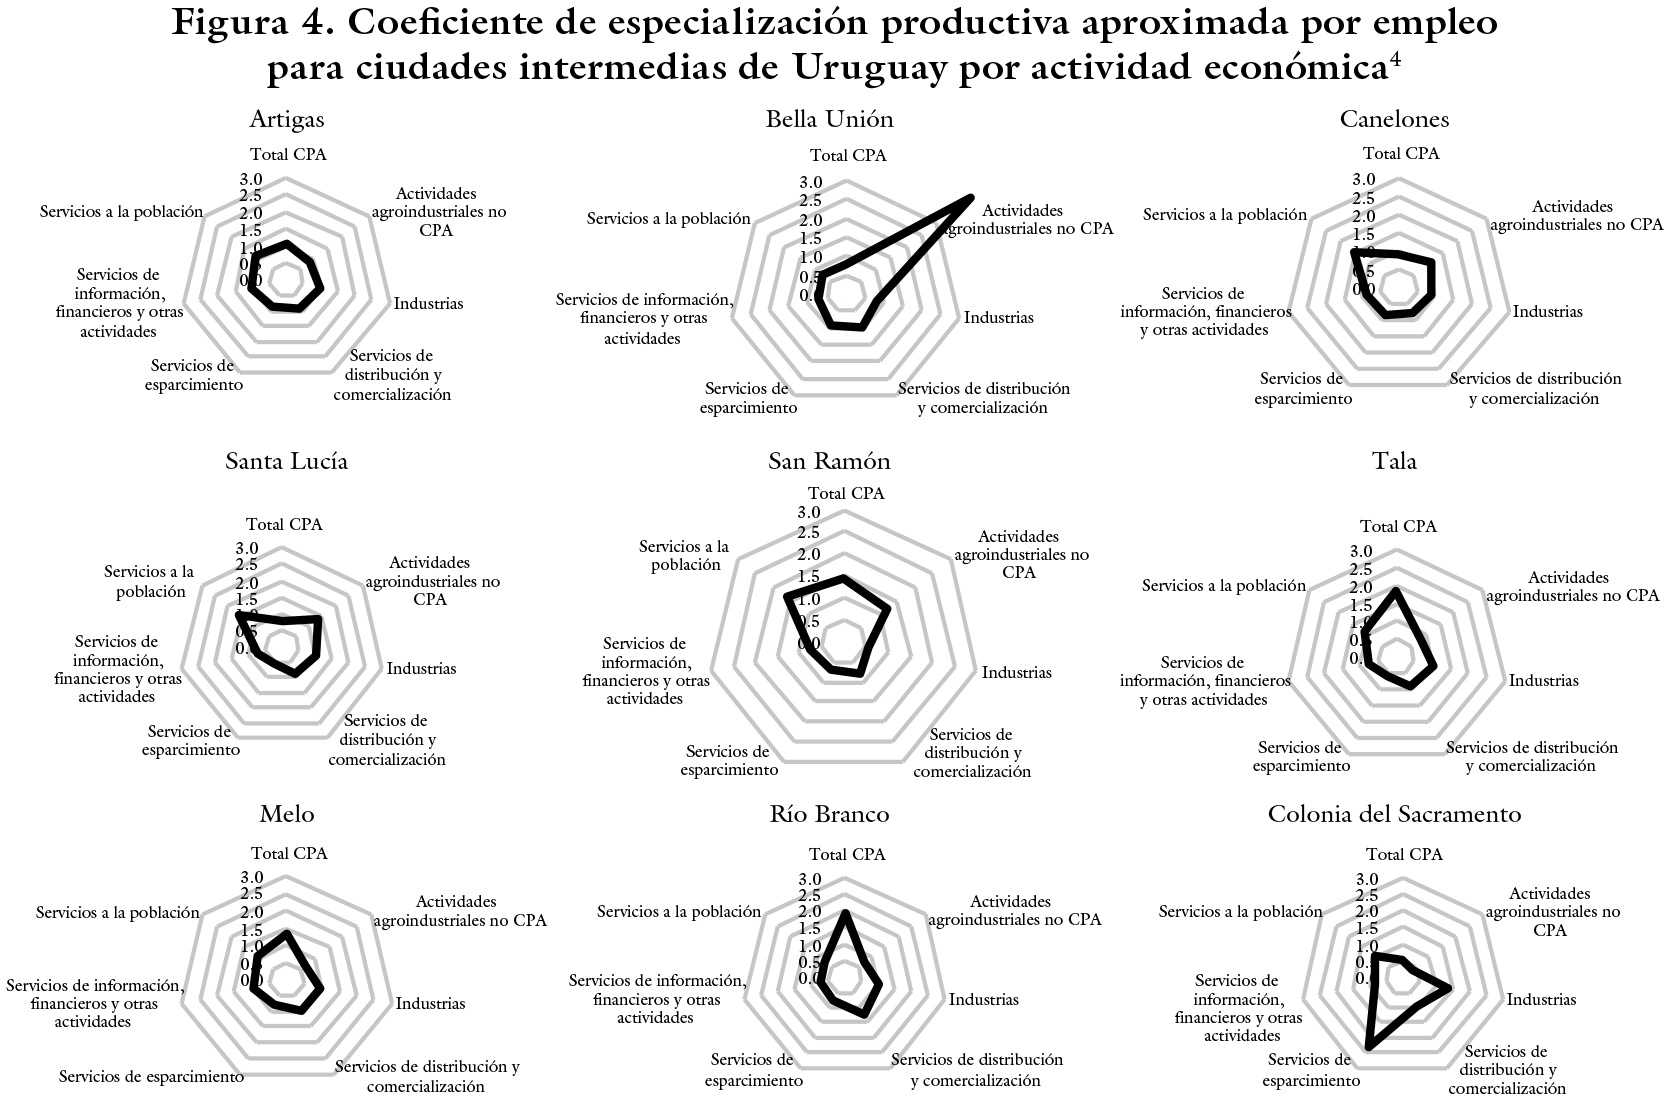 Coeftciente de especialización productiva aproximada por empleo para Ciudades intermedias de Uruguay por actividad económica
4

